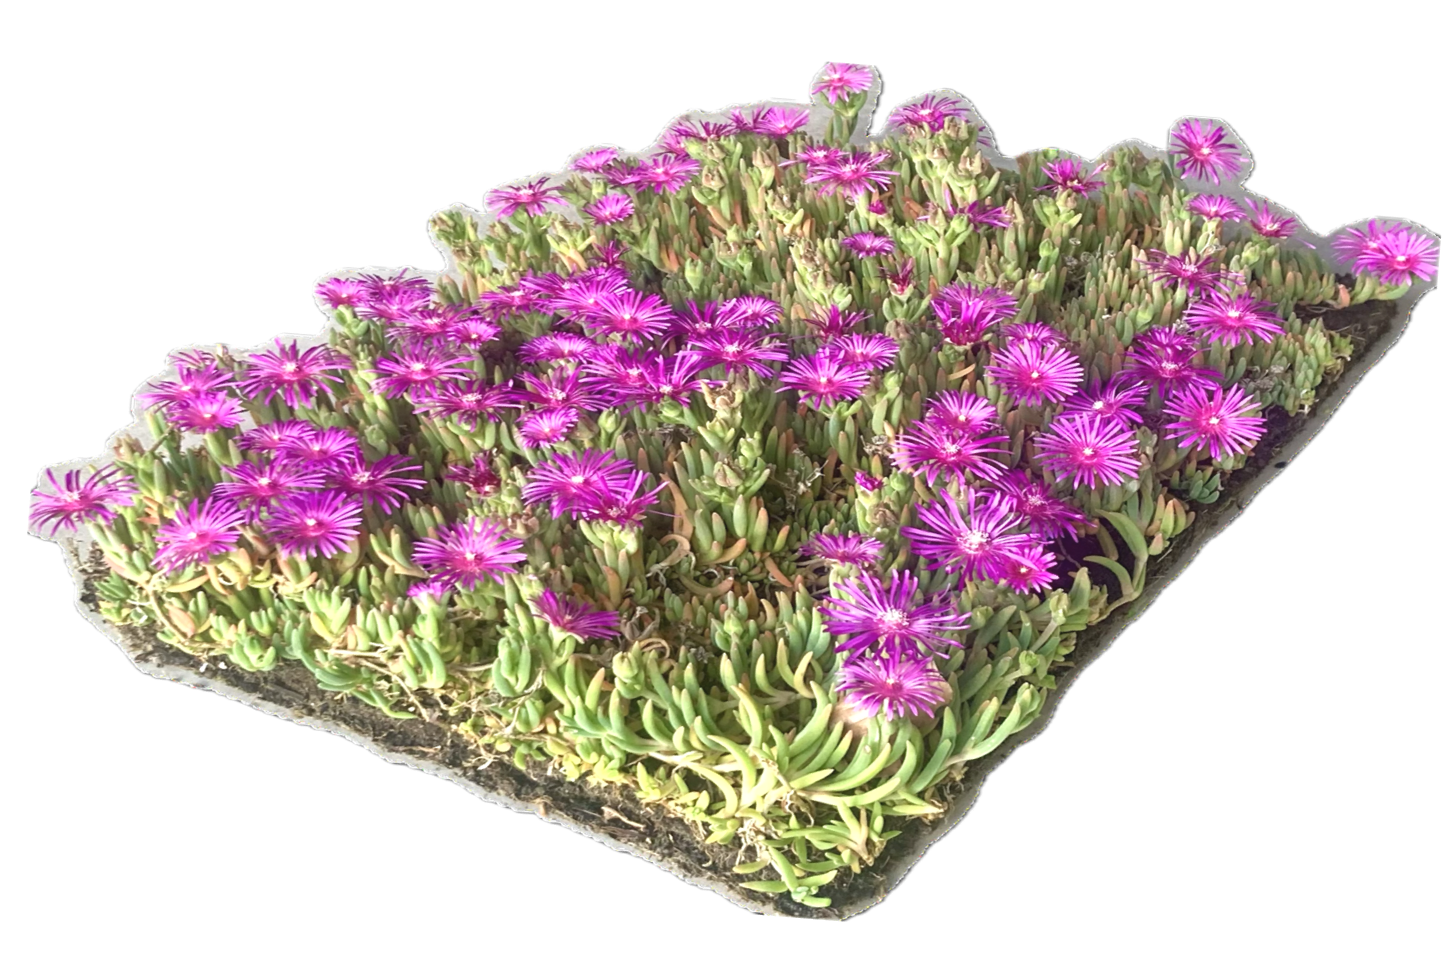 zichtbaar is een IJsbloem (Delosperma cooperi) plantenmat die in bloei staat meet roze bloemen.